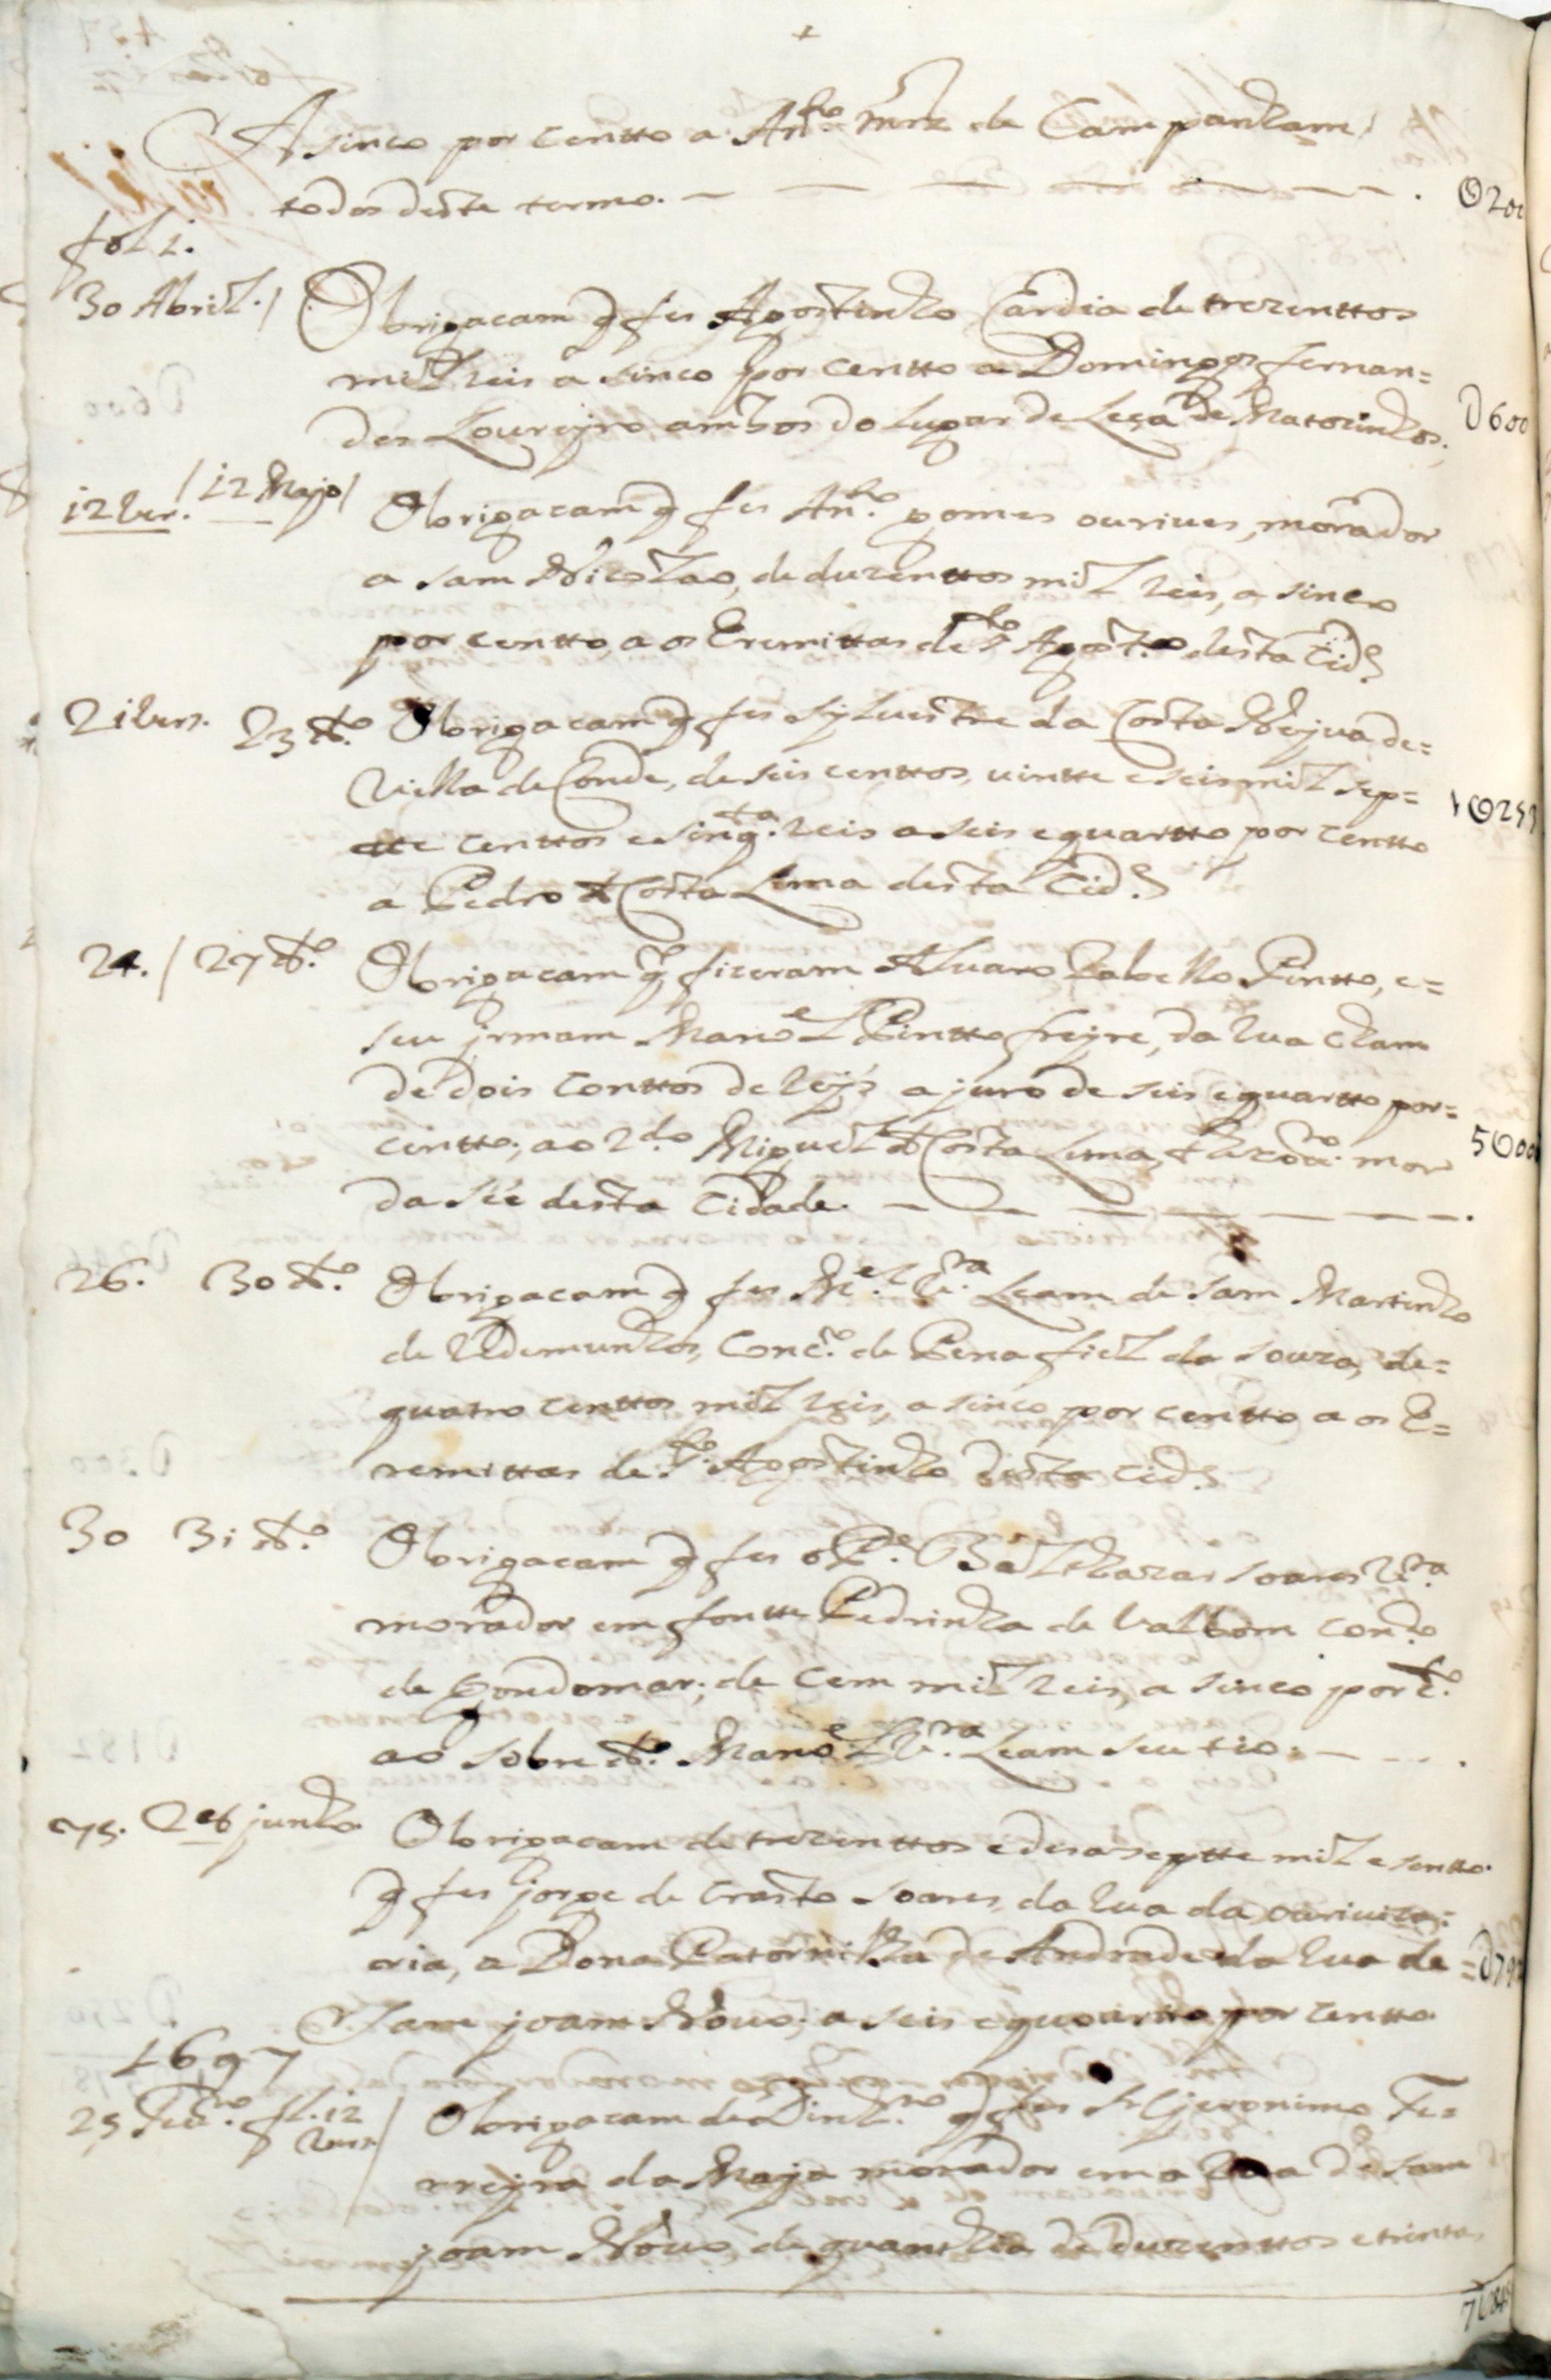 Certidão feita pelo tabelião das notas da Manuel Coelho da Cunha sobre o dinheiro entregue entre 1686 e 1698